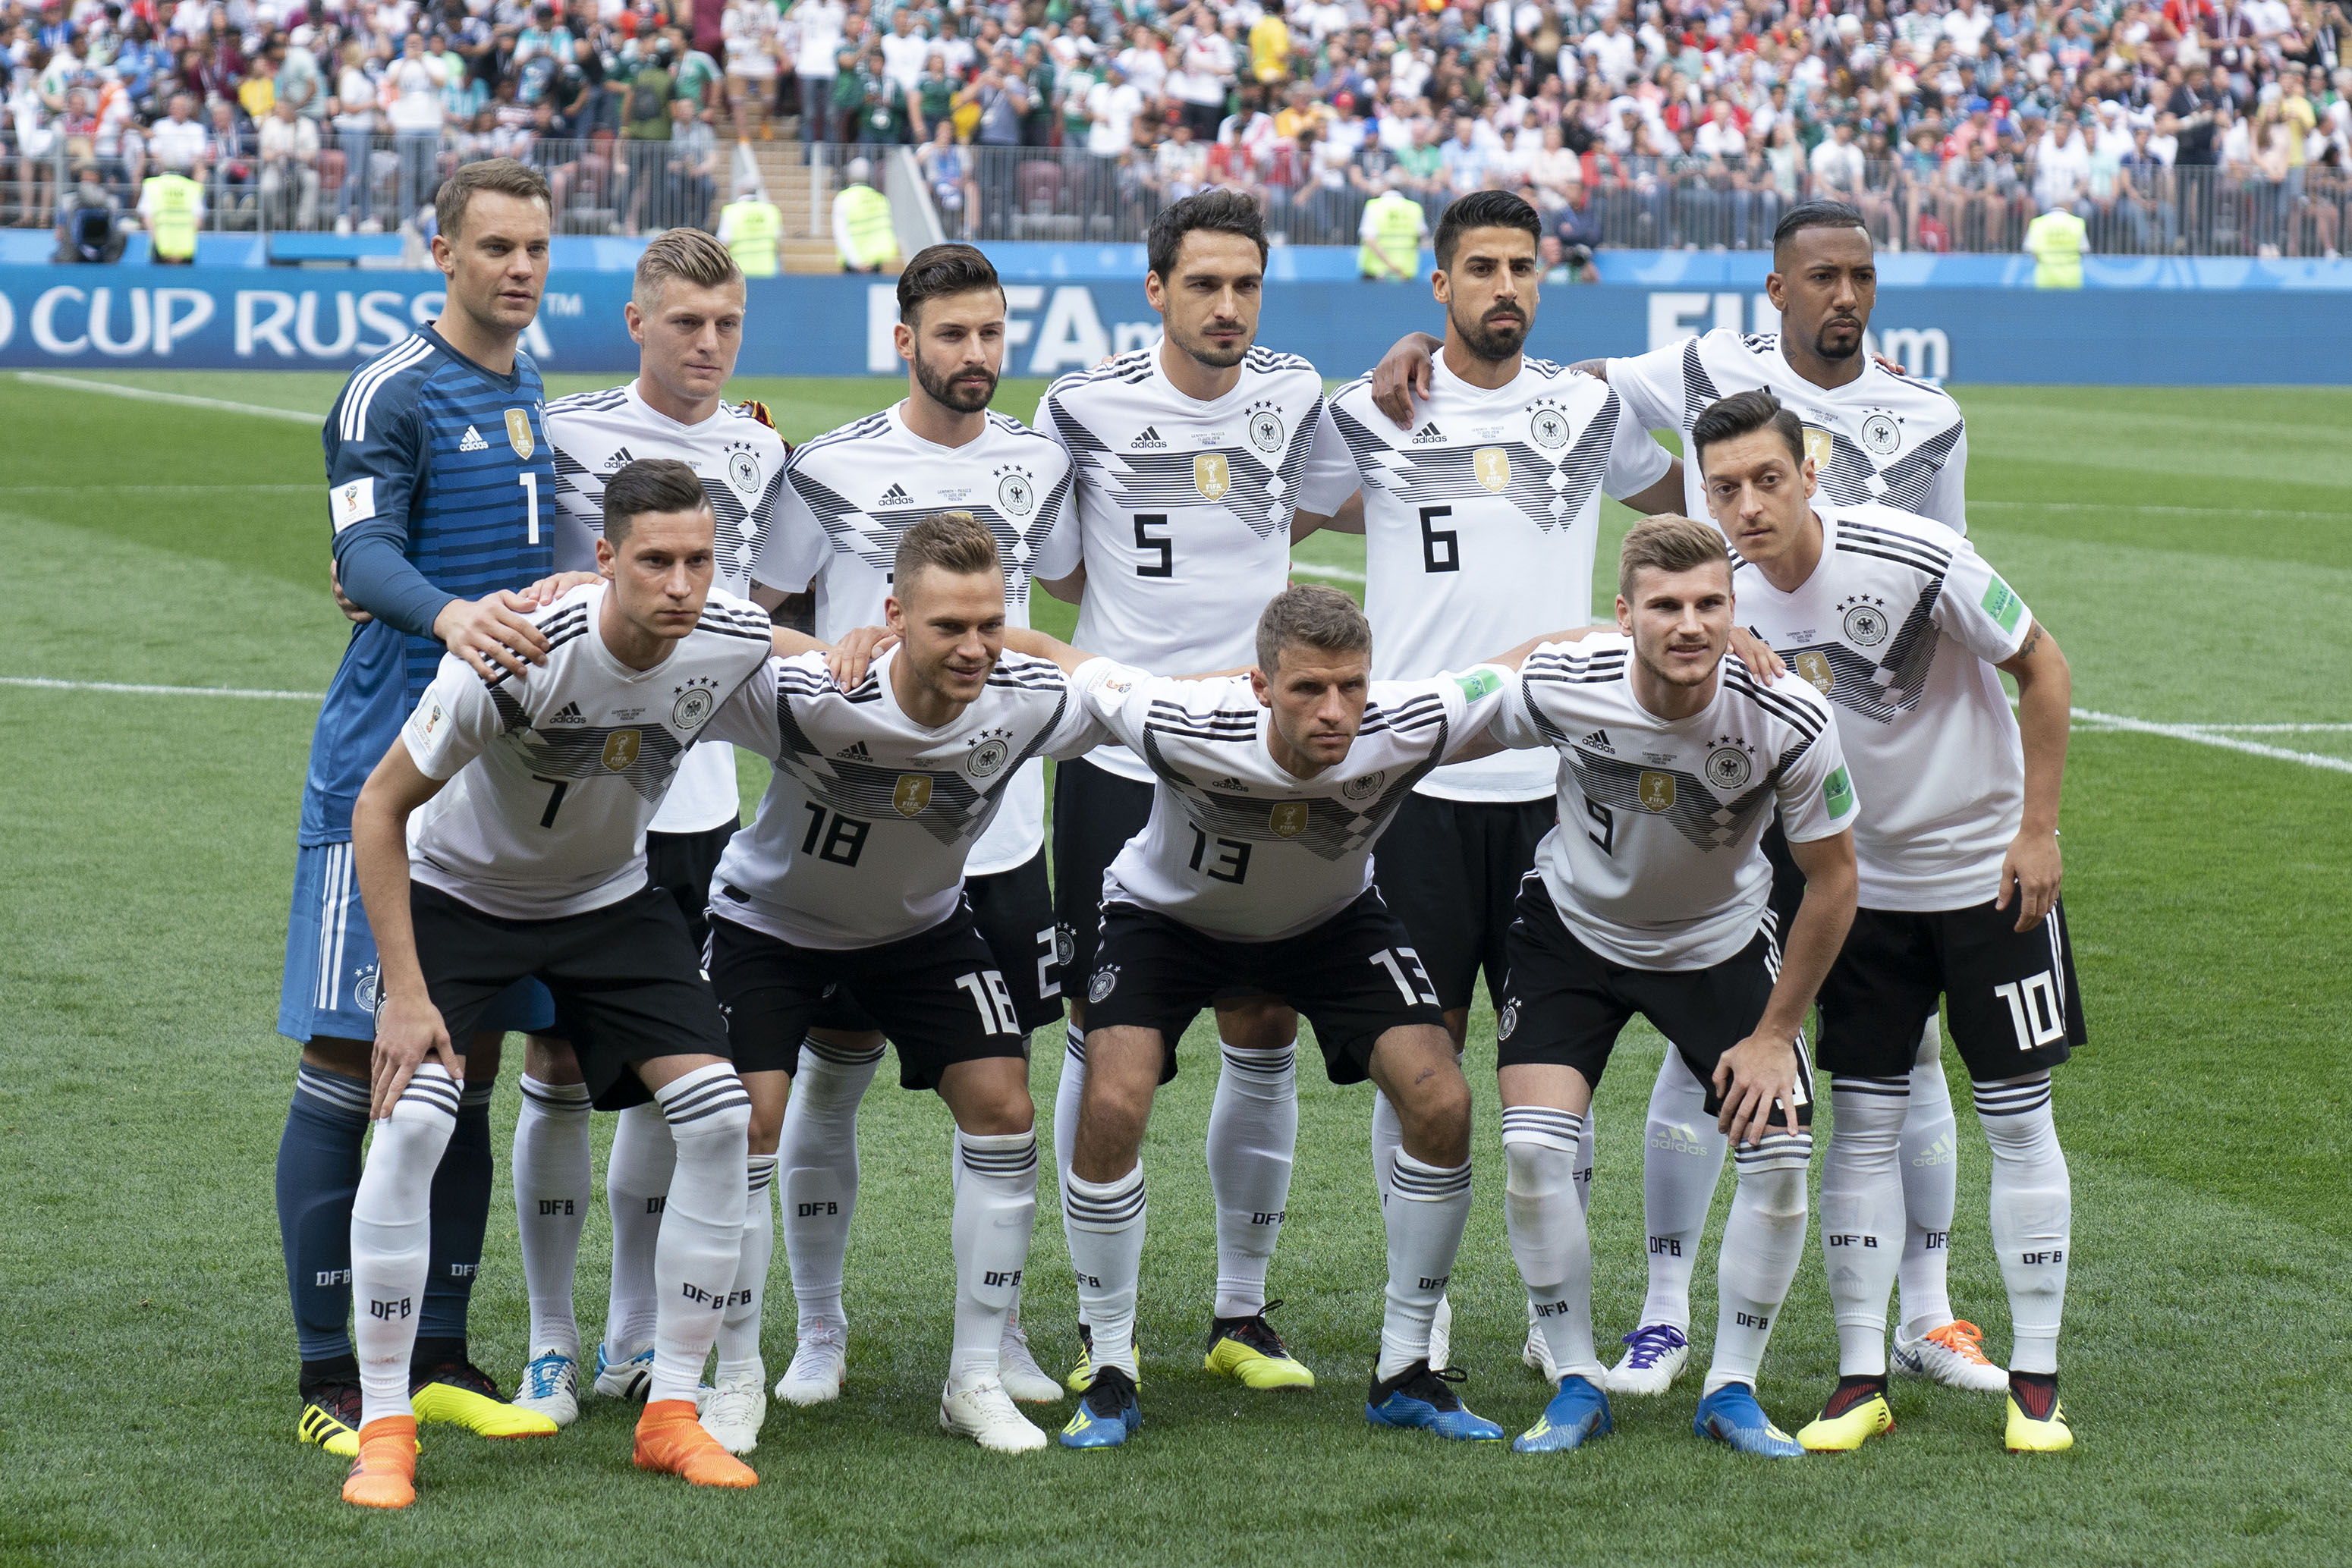 Alemania quedó ubicada en el lugar 15 en el primer ranking mensual de la FIFA después del Mundial de Rusia 2018